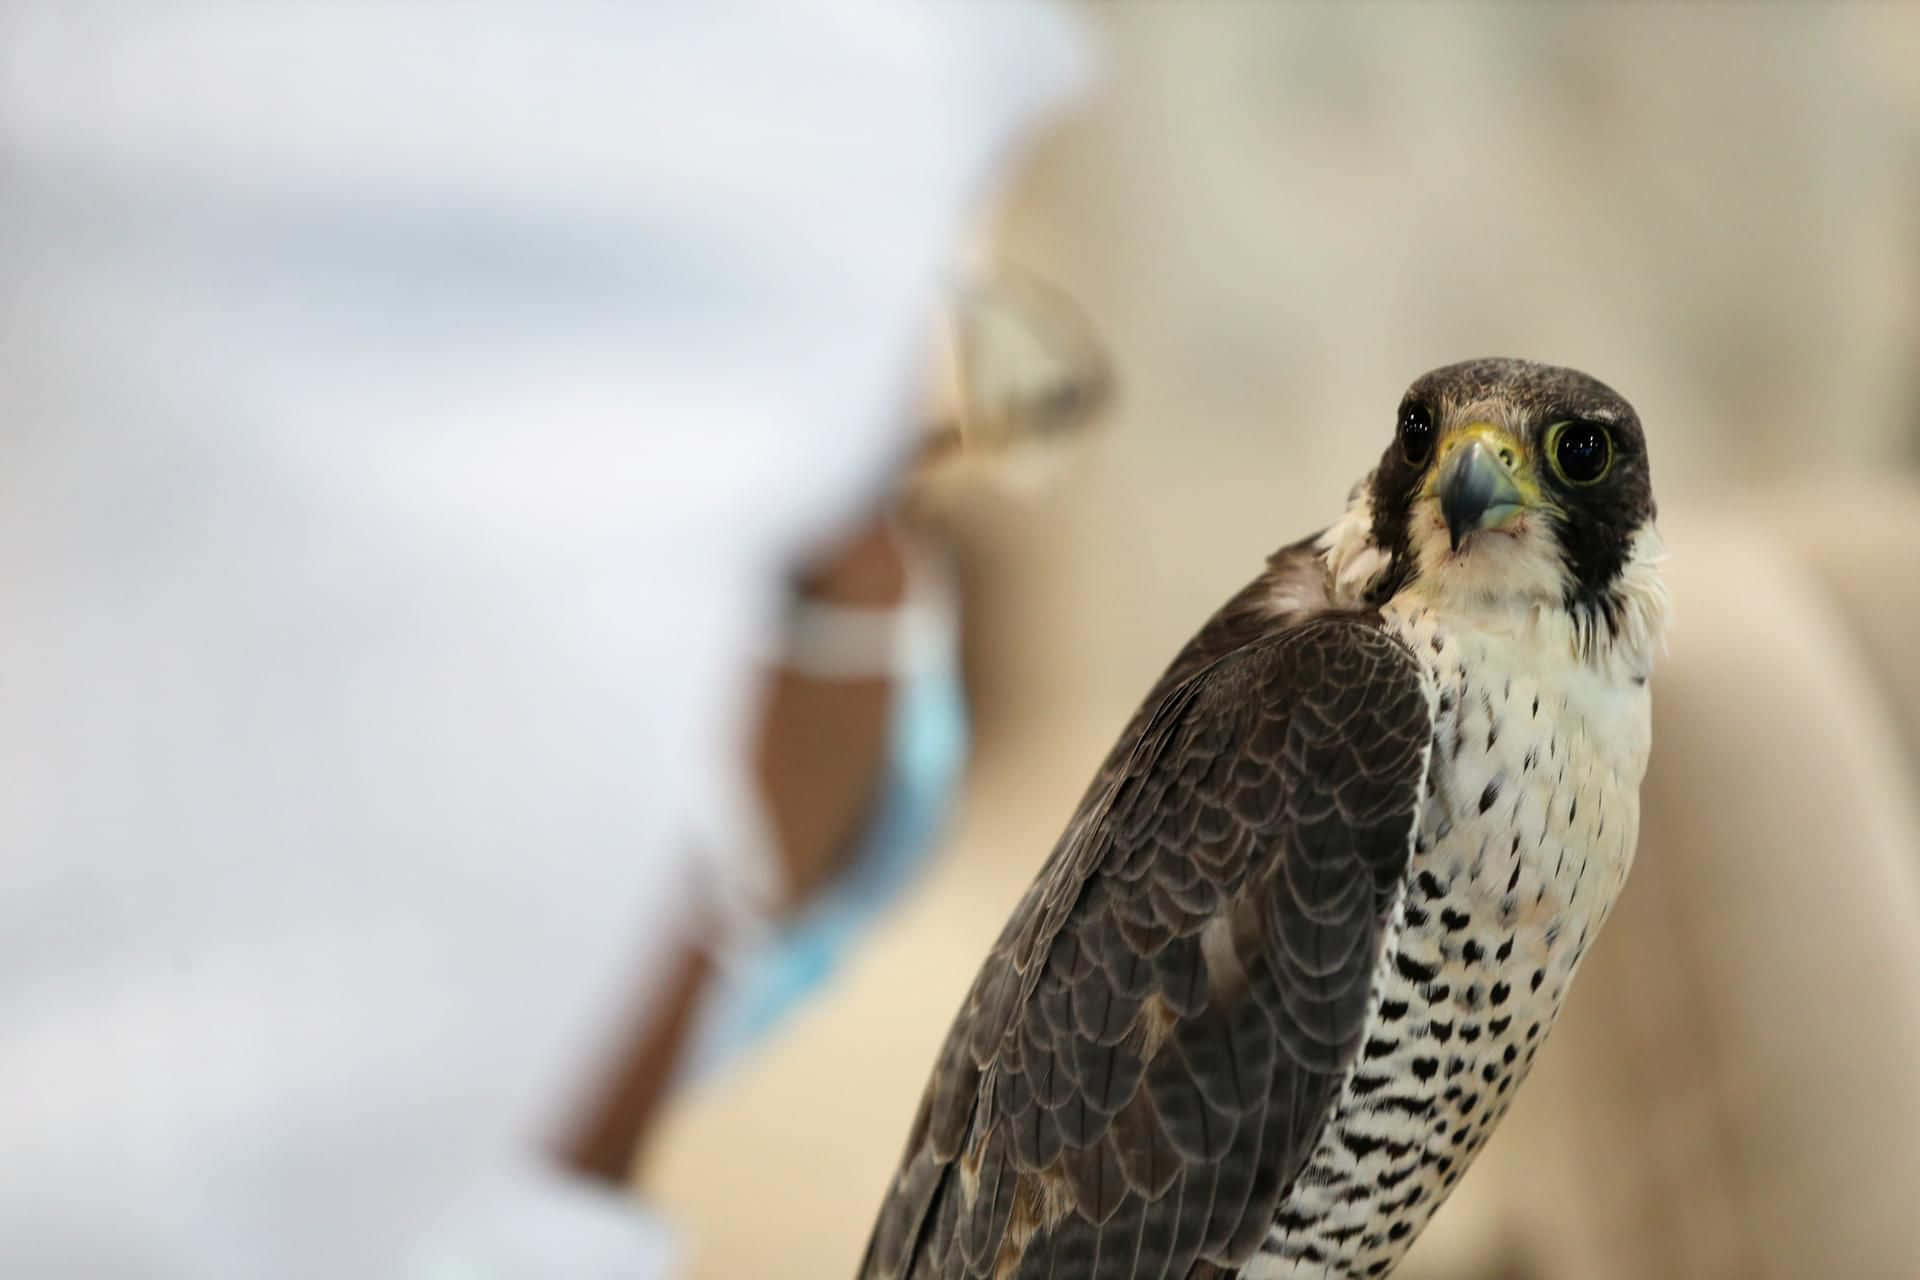 Unafotografia Della Fauna Selvatica Di Un Falco Pellegrino Adulto.